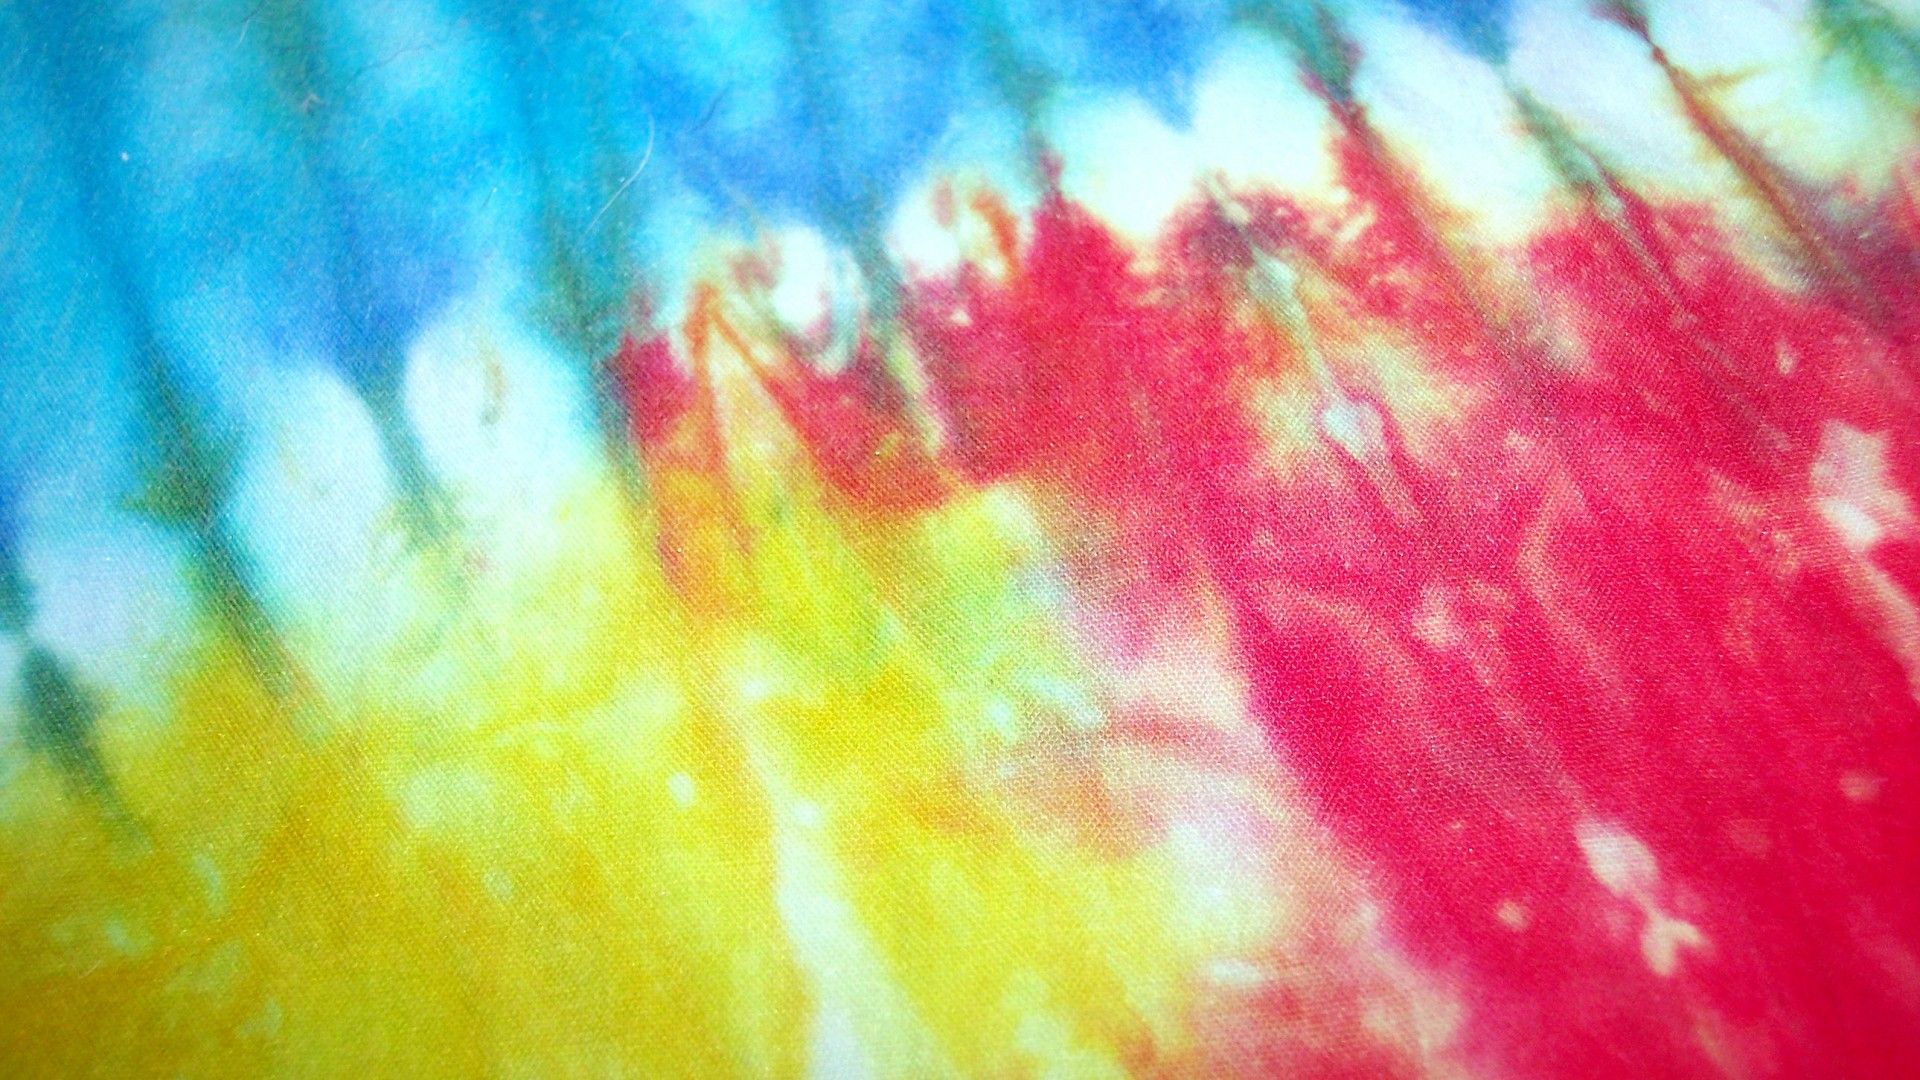 Tie Dye wallpaperDownload free High Resolution background